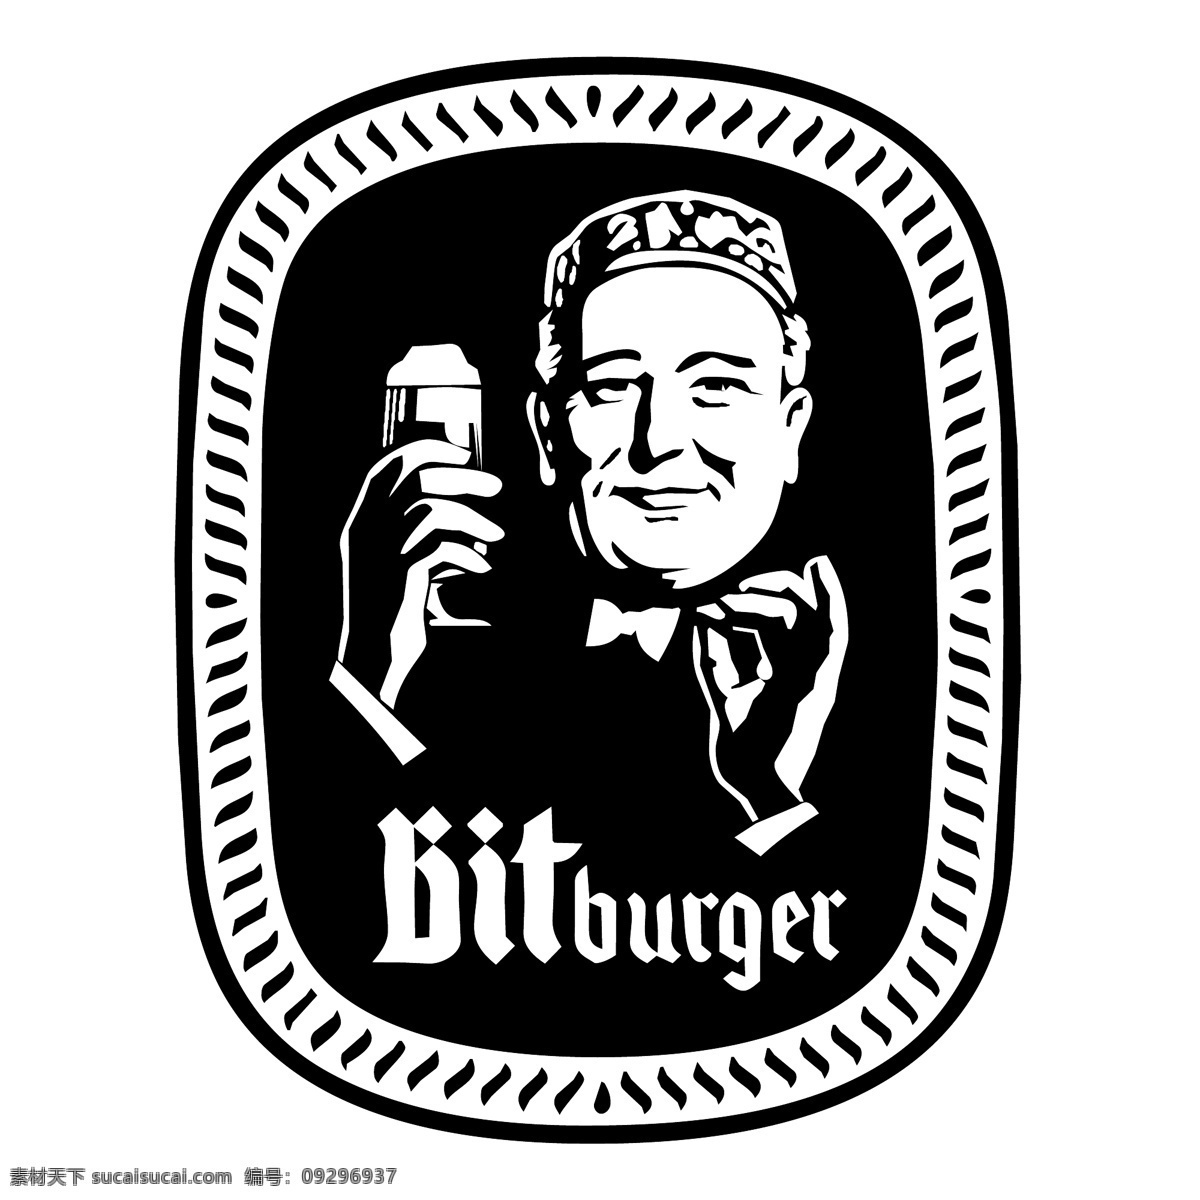 logo 标识标志图标 德国啤酒 企业 标志 企业标志 bitburger 碧 特 博格 啤酒 碧特博格啤酒 矢量 psd源文件 logo设计